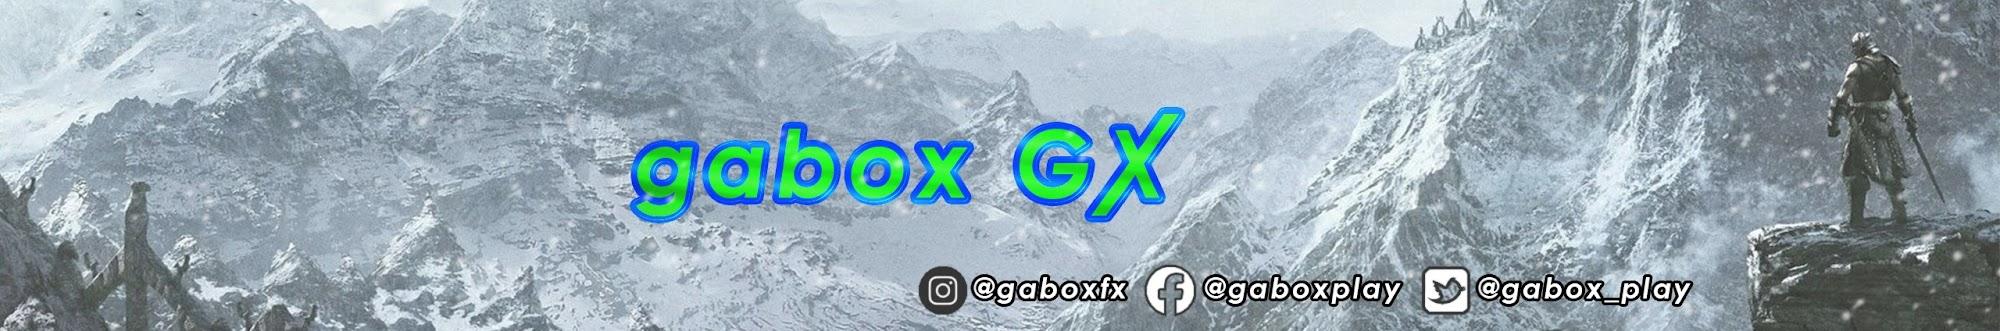 gabox GX